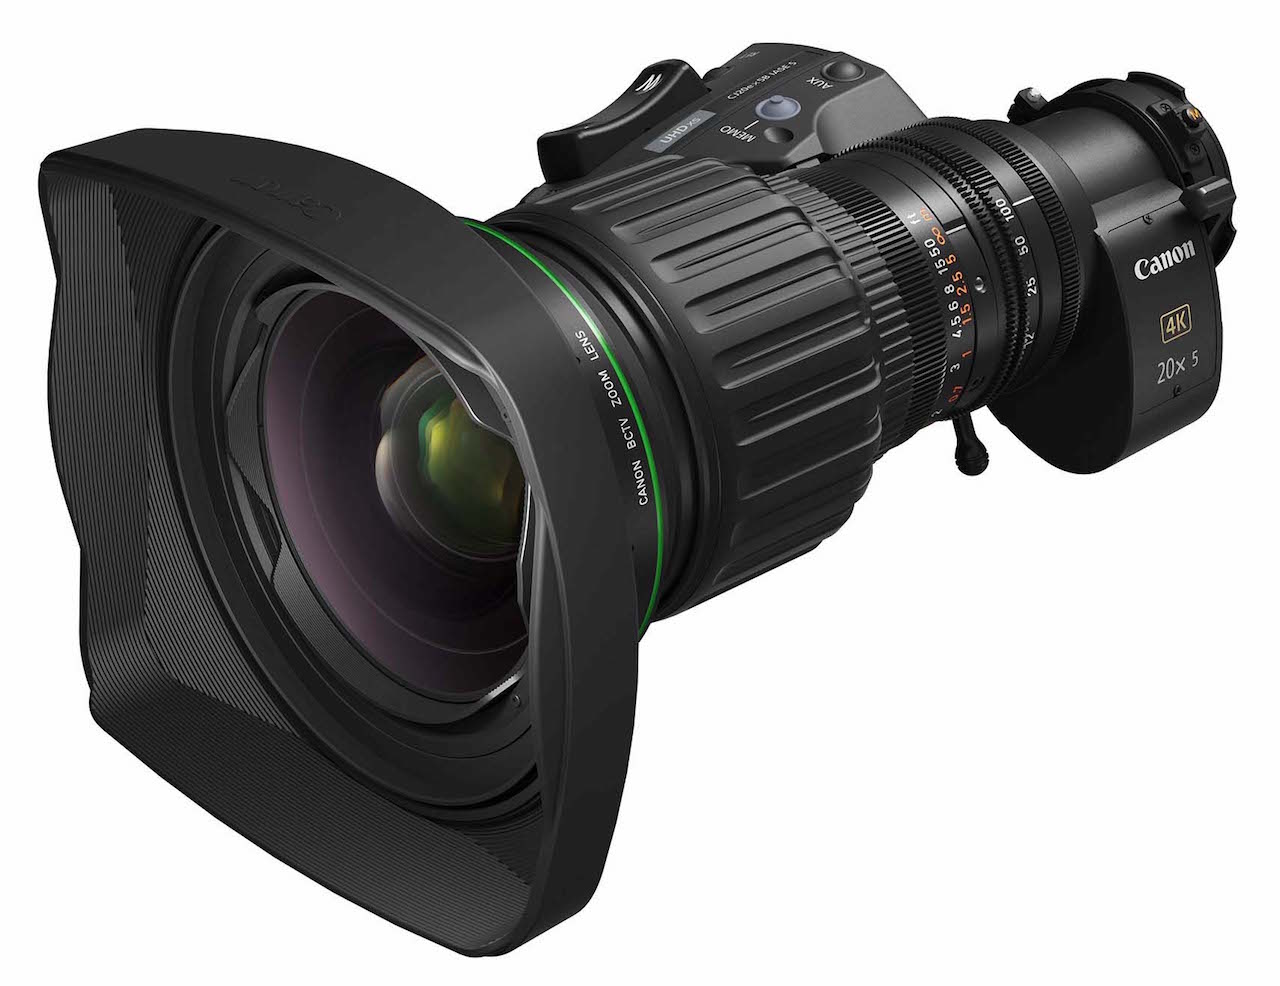 Soberano malta donde quiera Canon amplía su gama de objetivos para broadcast 4K con el nuevo CJ20ex5B